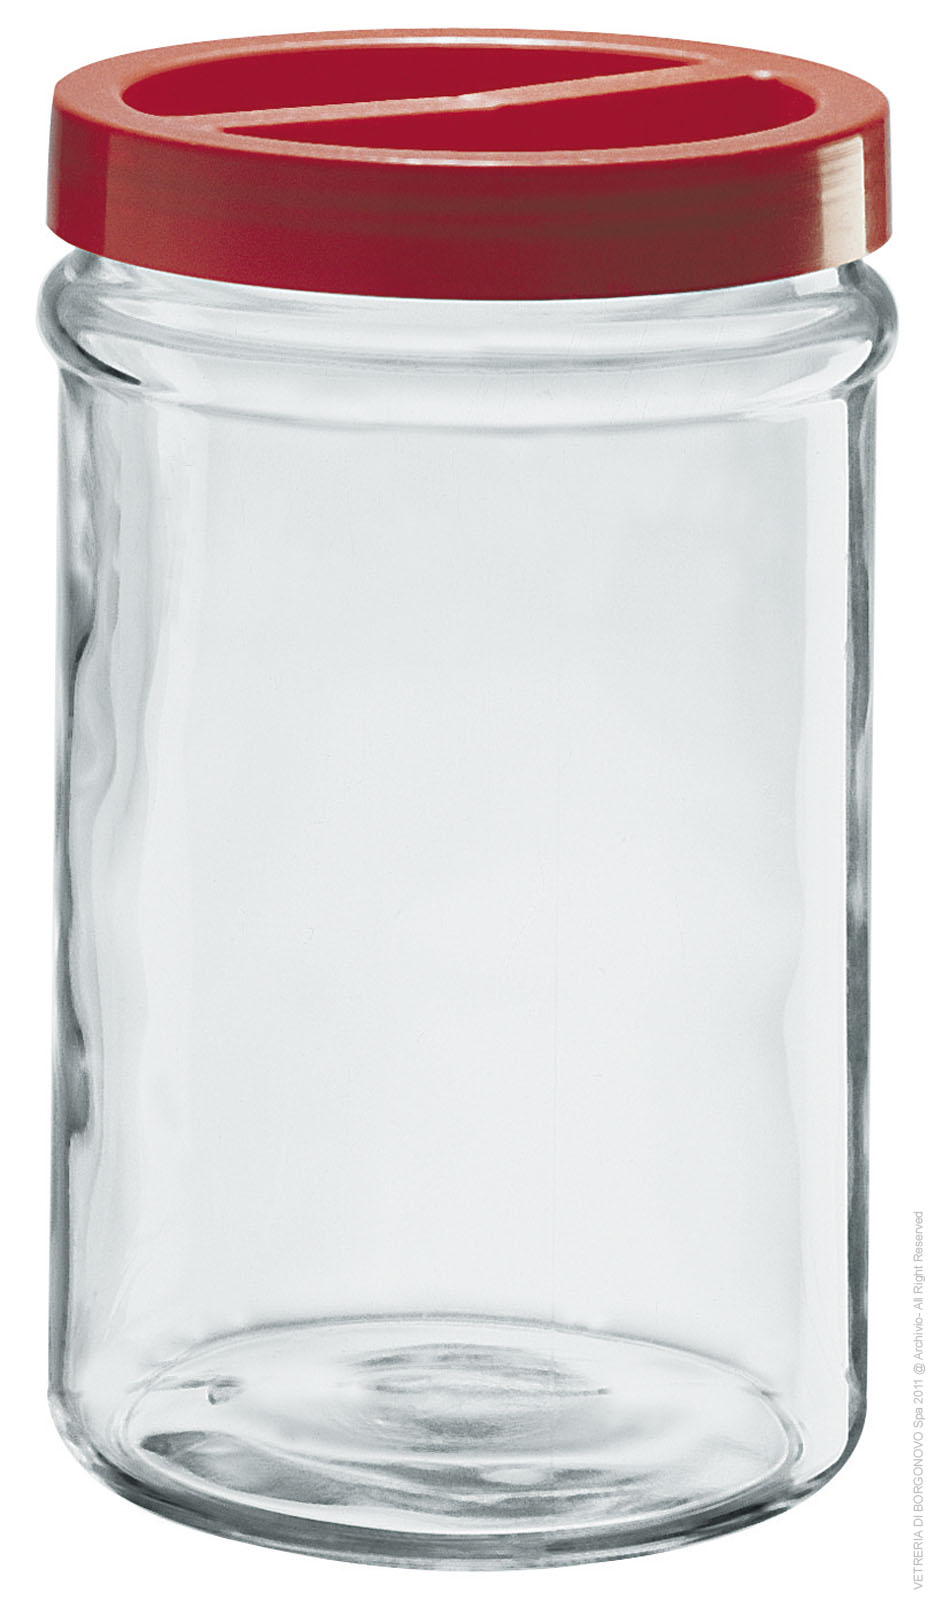 צנצנת זכוכית 5 ליטר דגם אורטס - Borgonovo